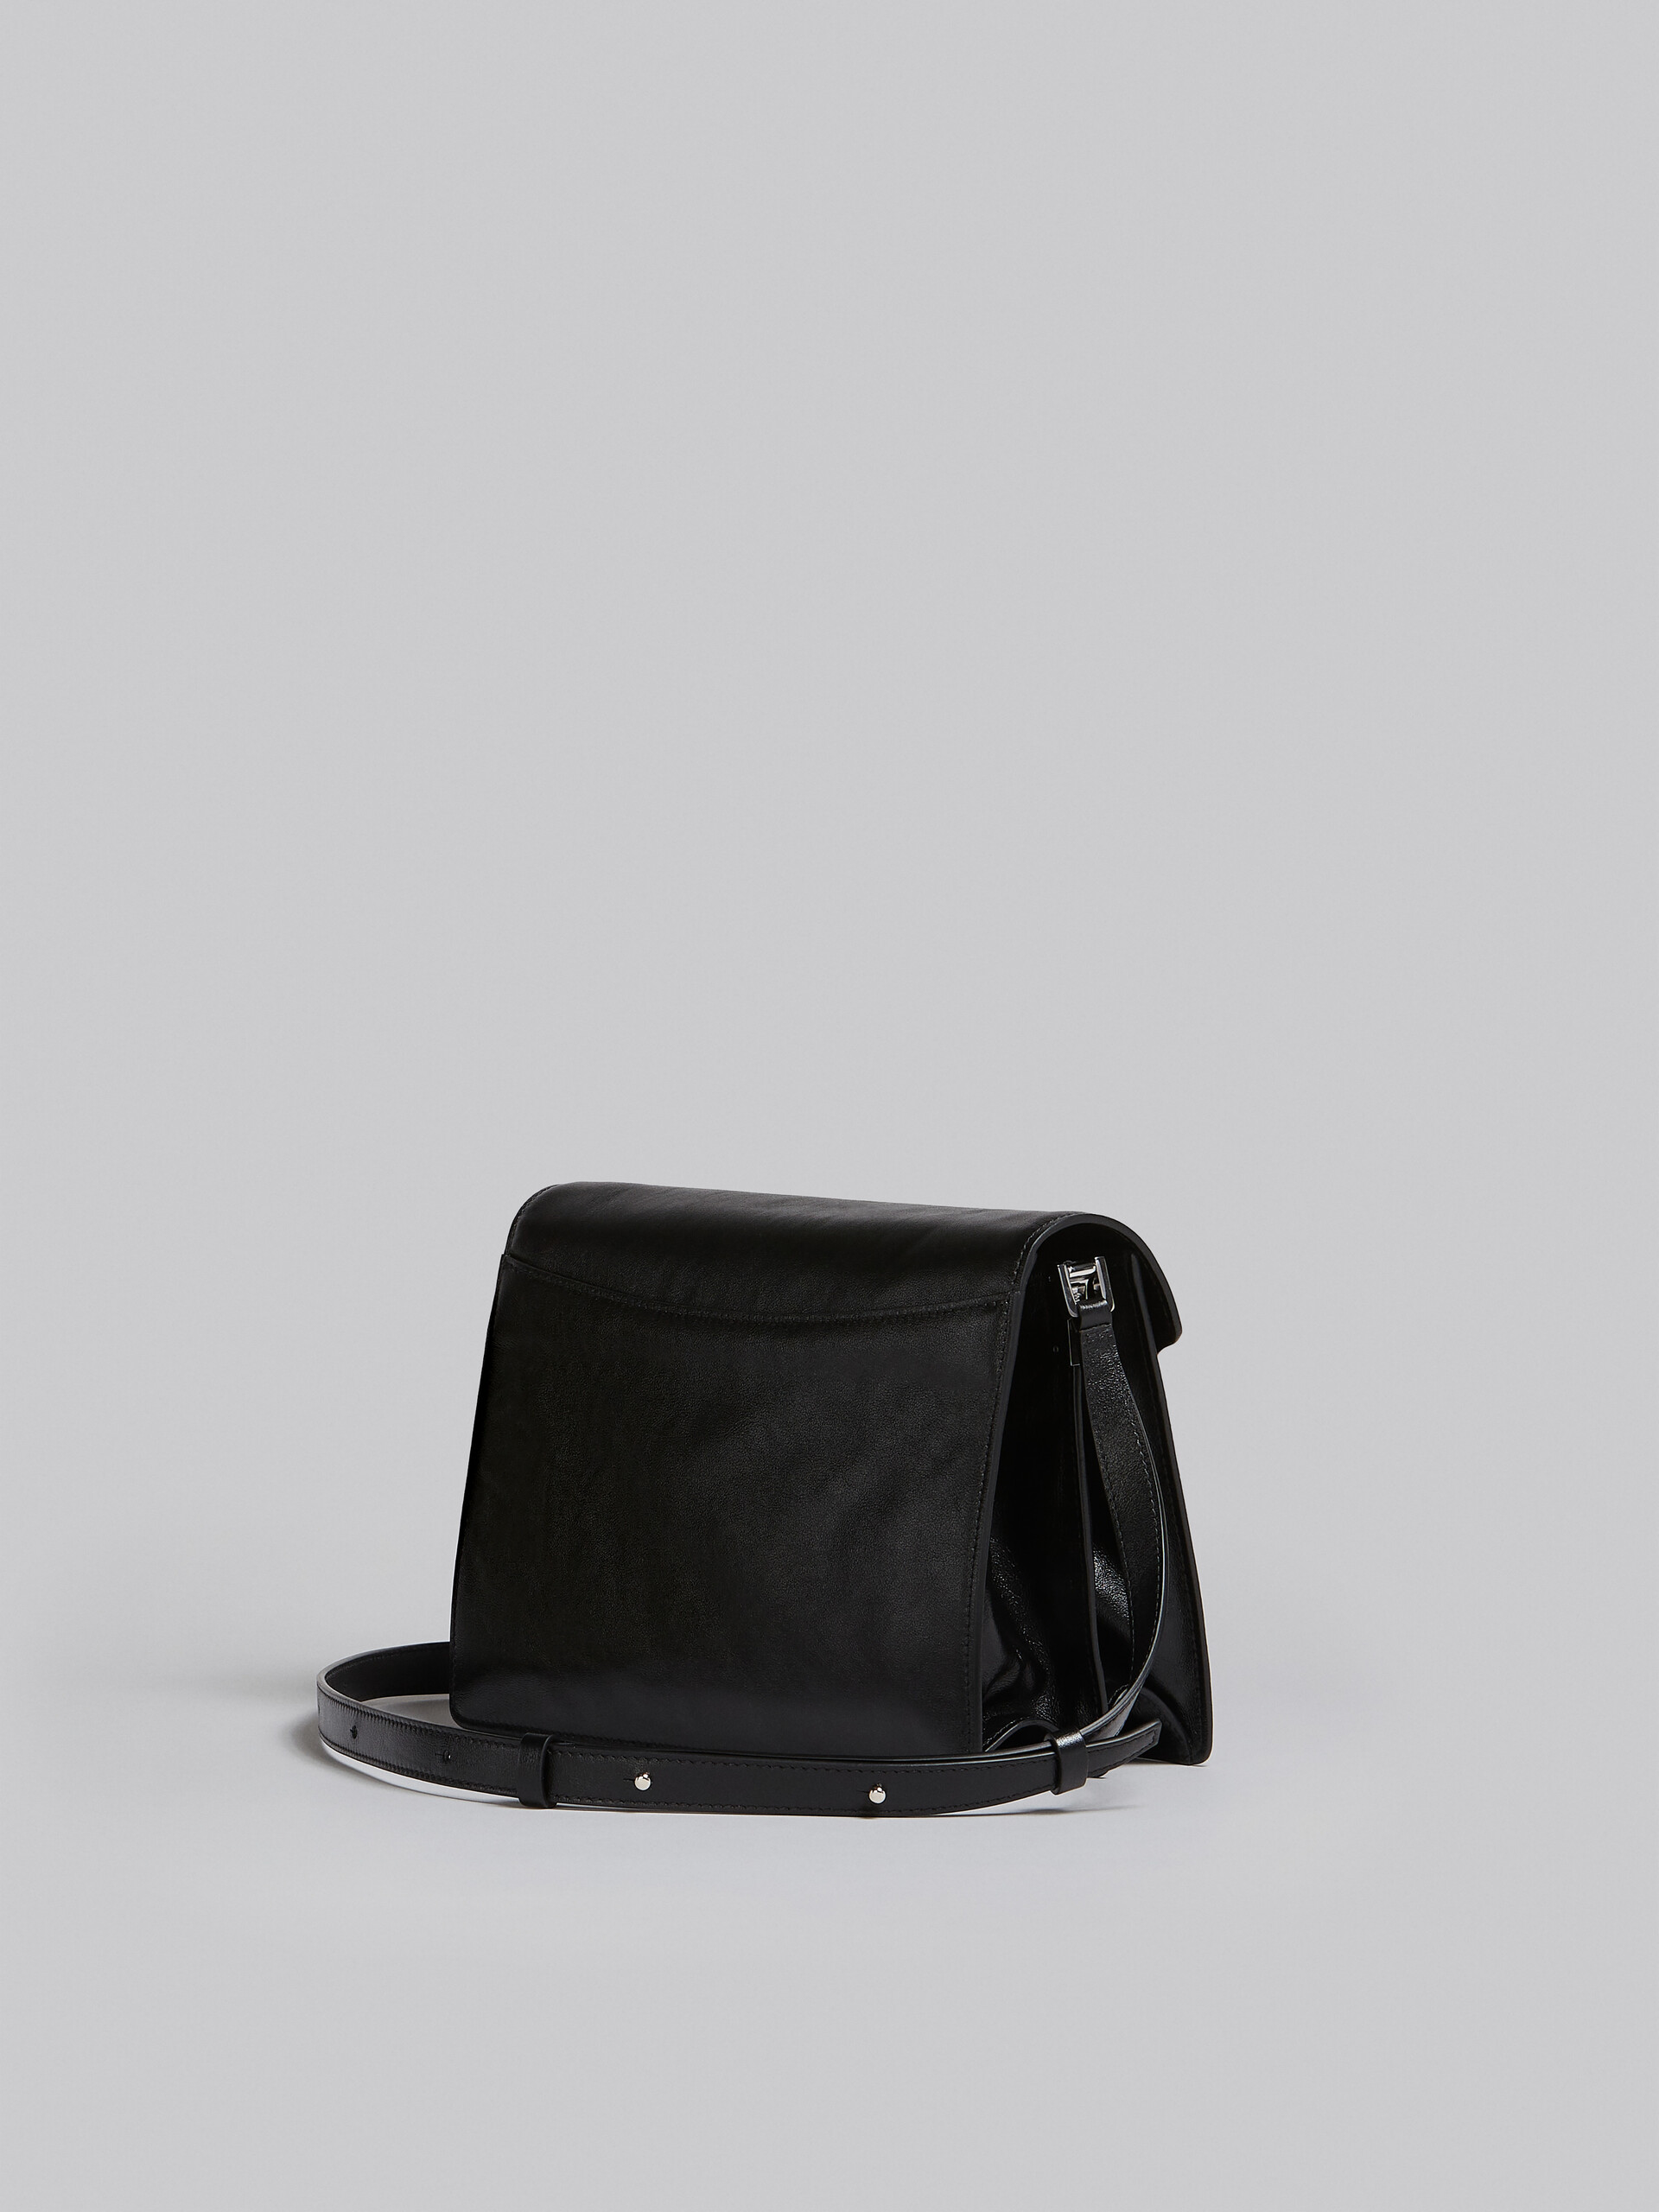 Trunk Soft Large Bag in black leather - Shoulder Bag - Image 3